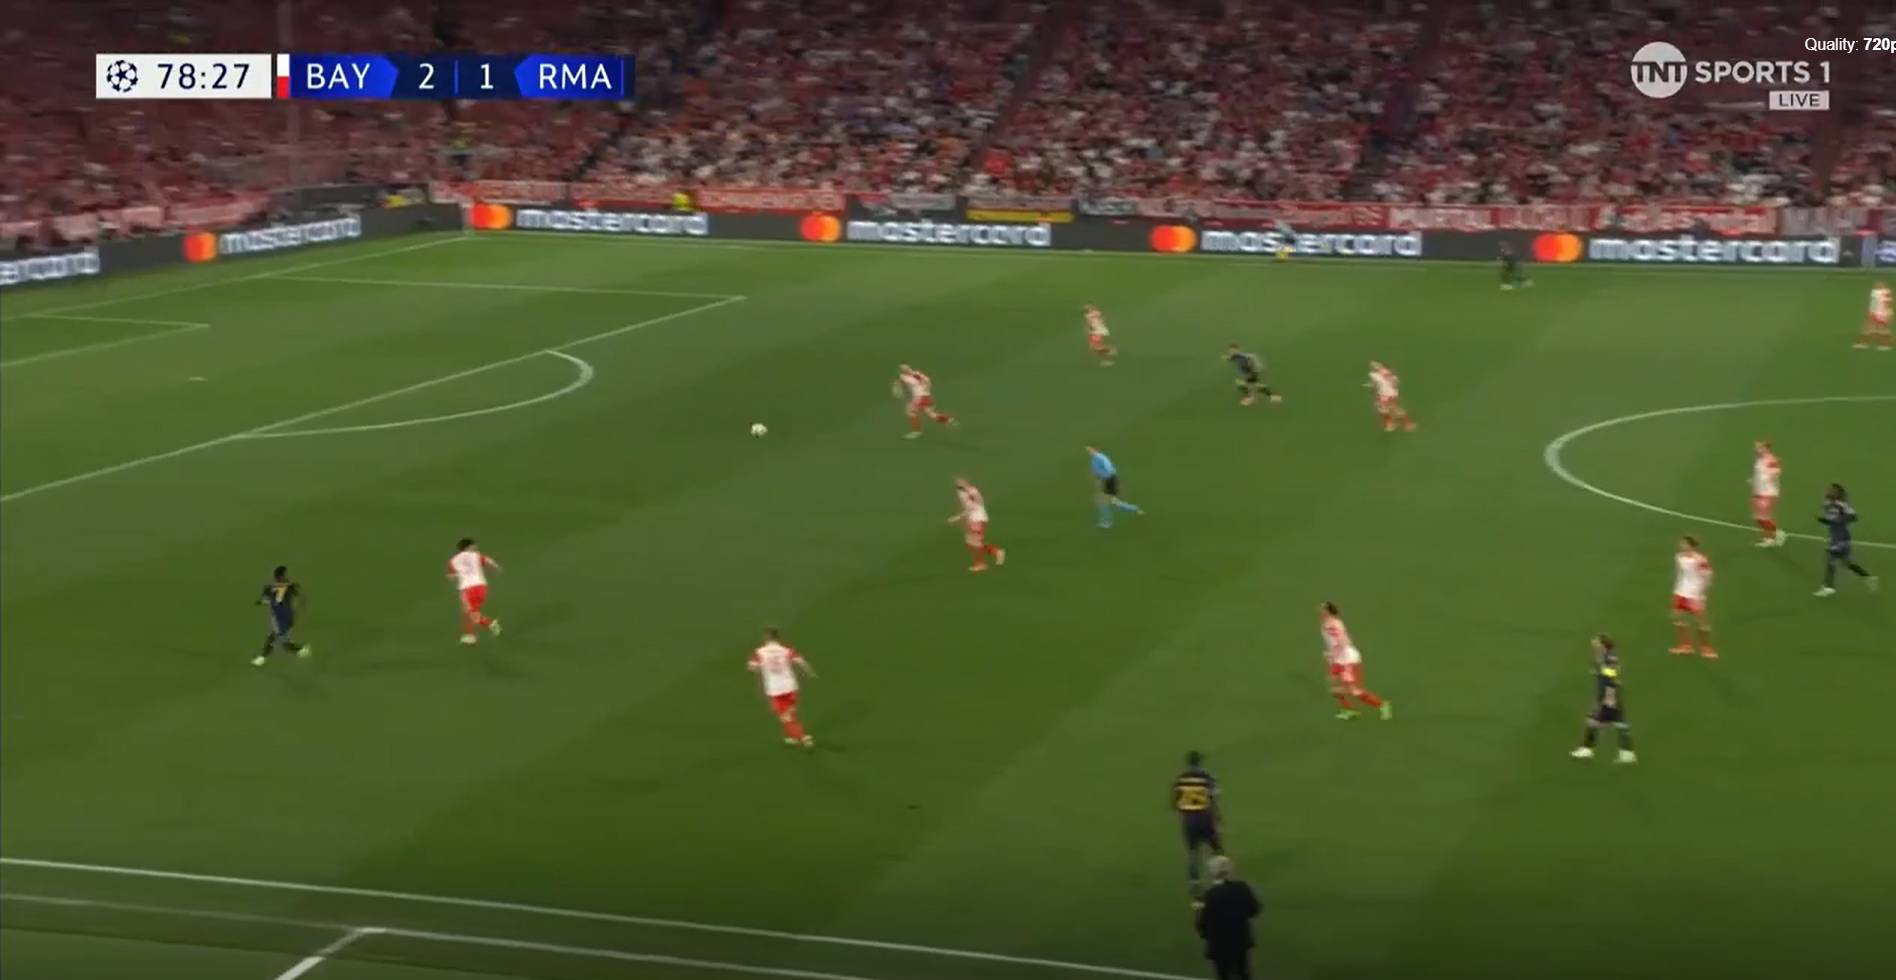 La misma jugada de Manchester, pero esta vez por la izquierda. Luka Modric mete el pase con el interior, aunque siempre lo hace con el interior, y el balón, con rosca, le llega a Vinicius solo delante del portero.